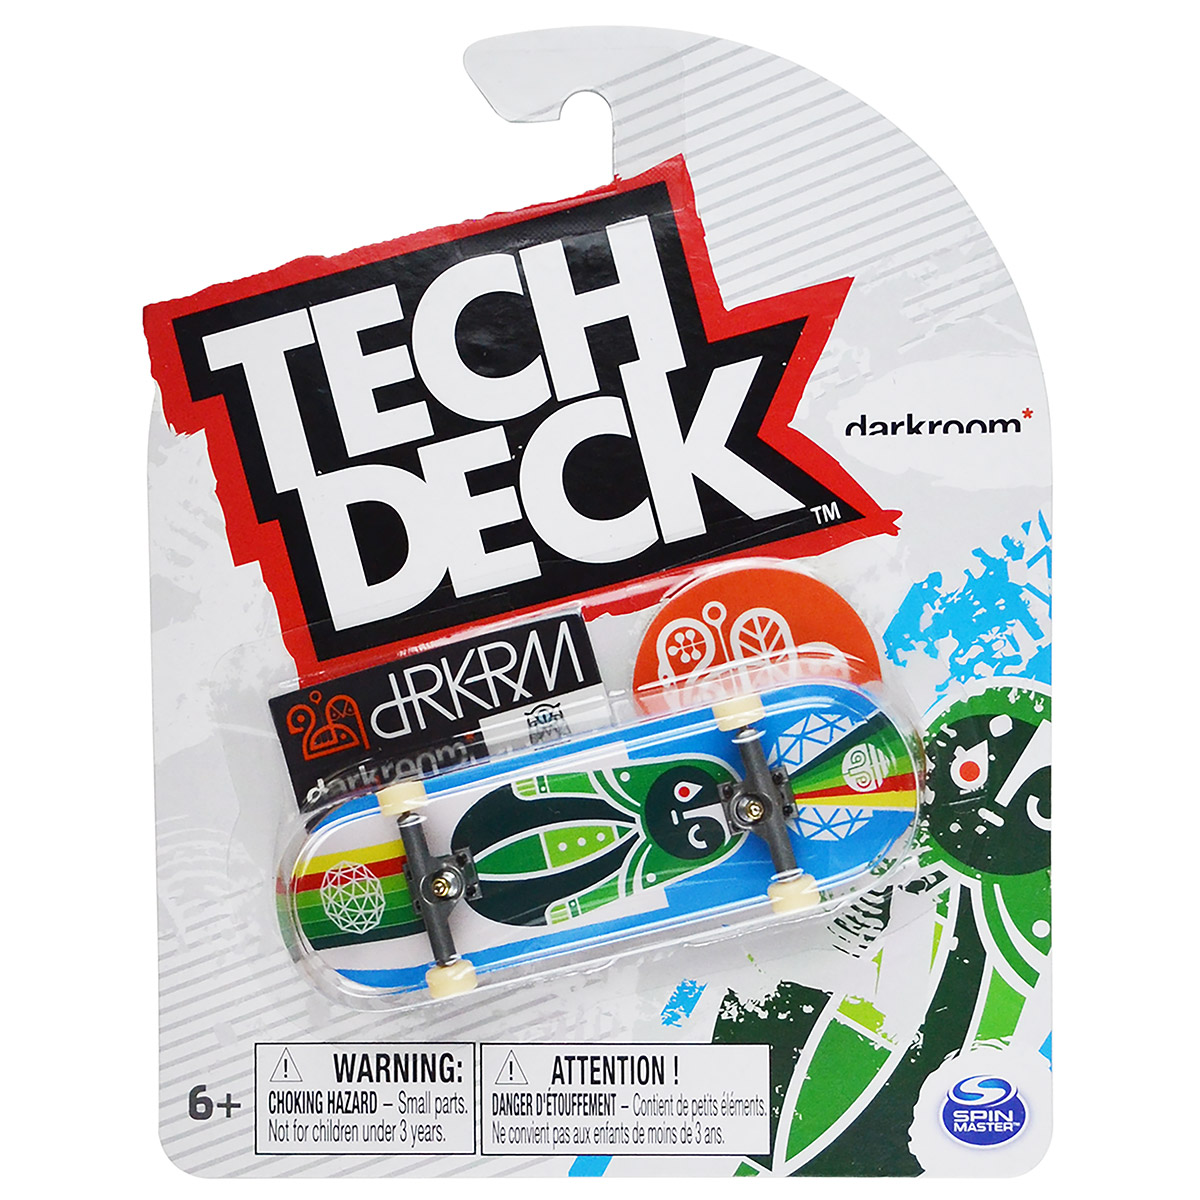 Skate de Dedo 96mm - Darkroom Azul - Tech Deck